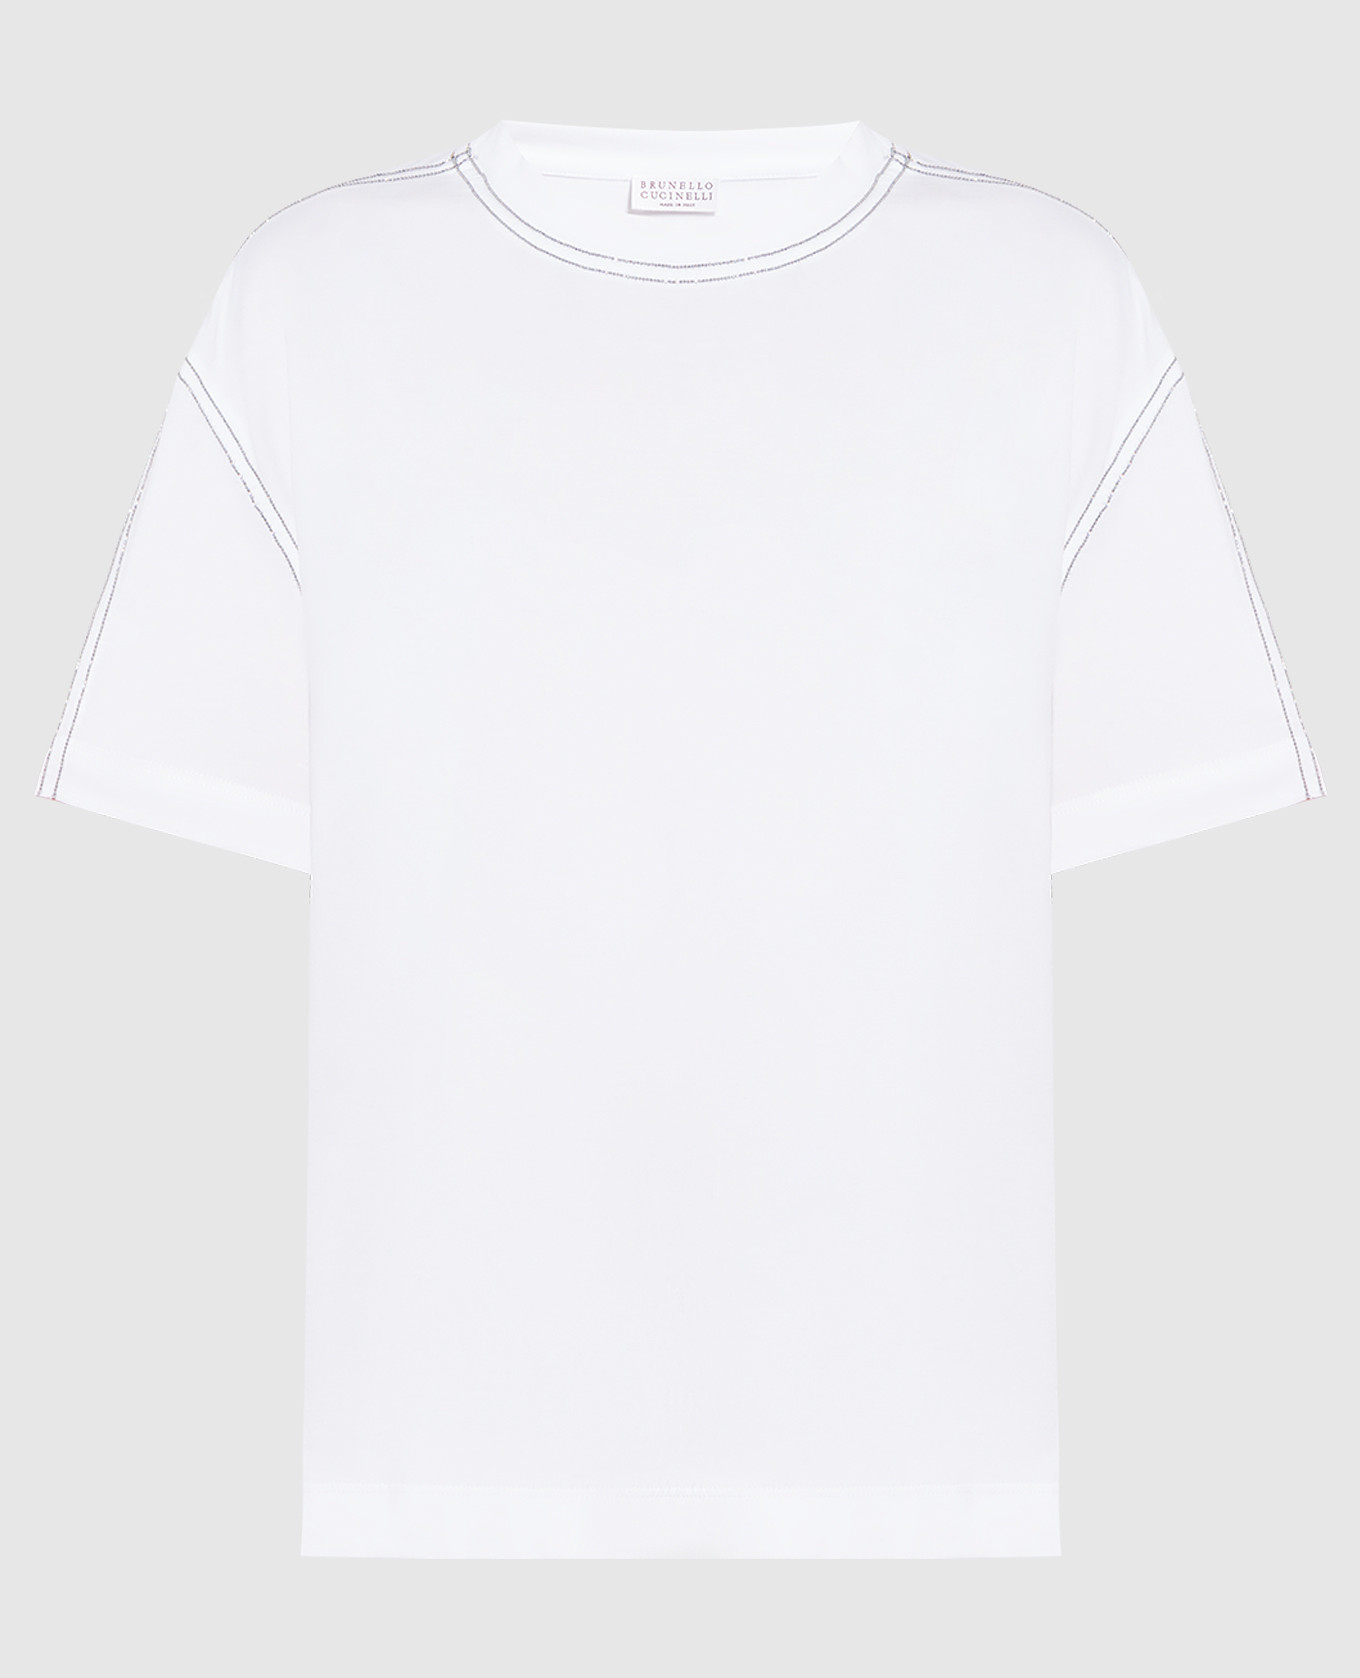 White t-shirt with monil chain